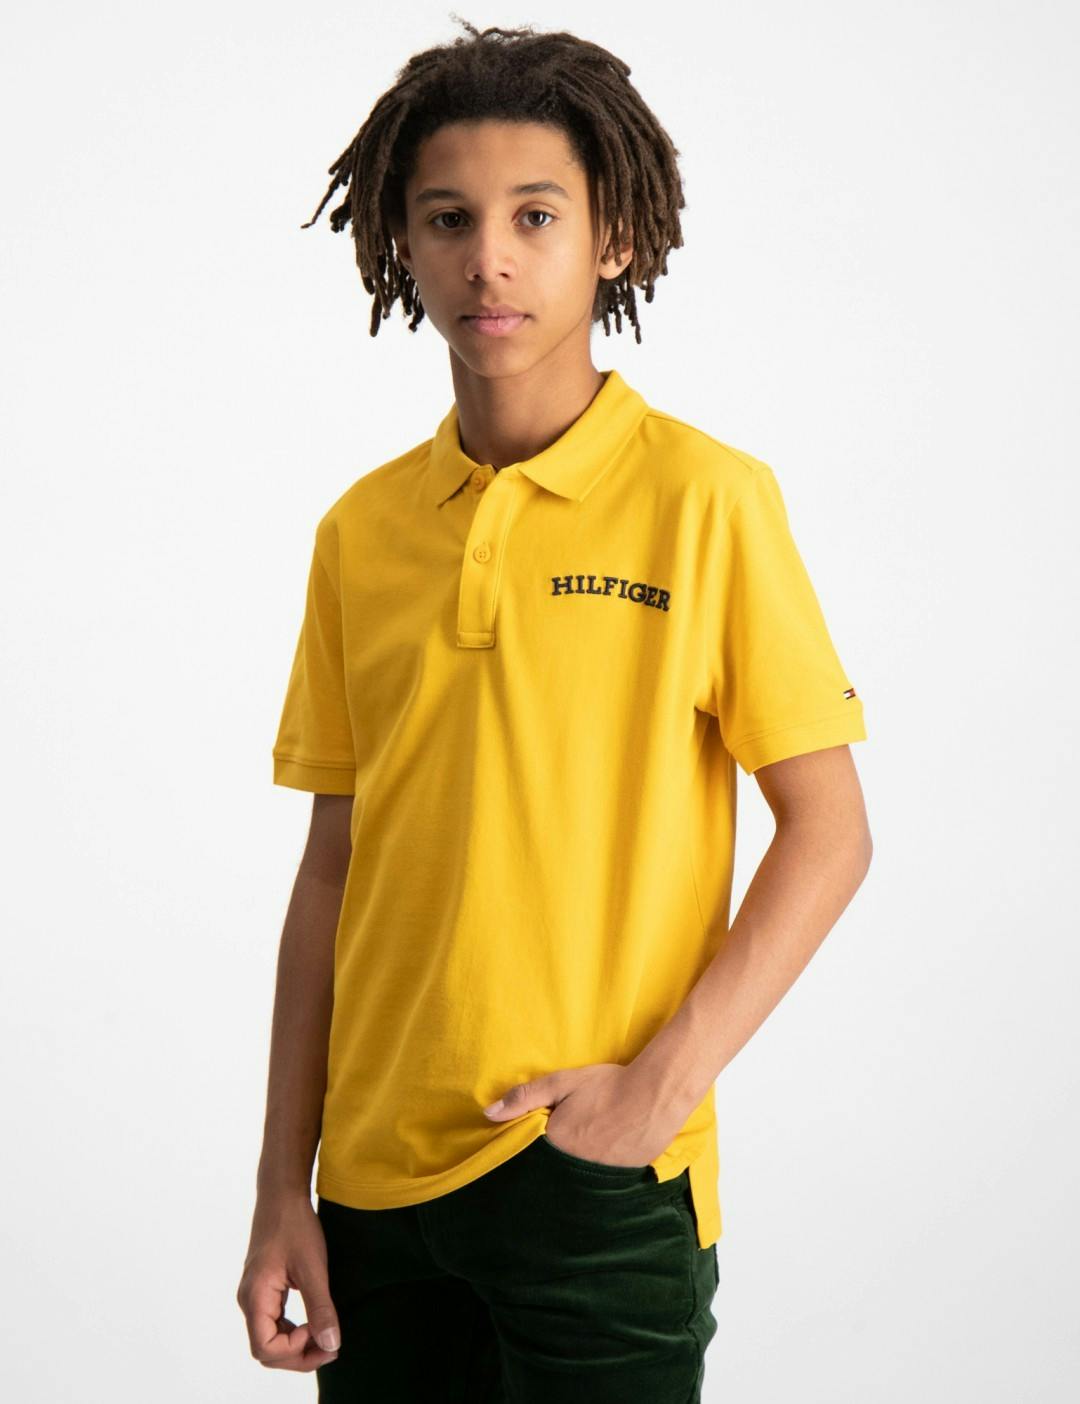 T-Shirt Kids Brand Polo Hilfiger Pique | Hemden Jugendliche und Kinder Tommy & für Store